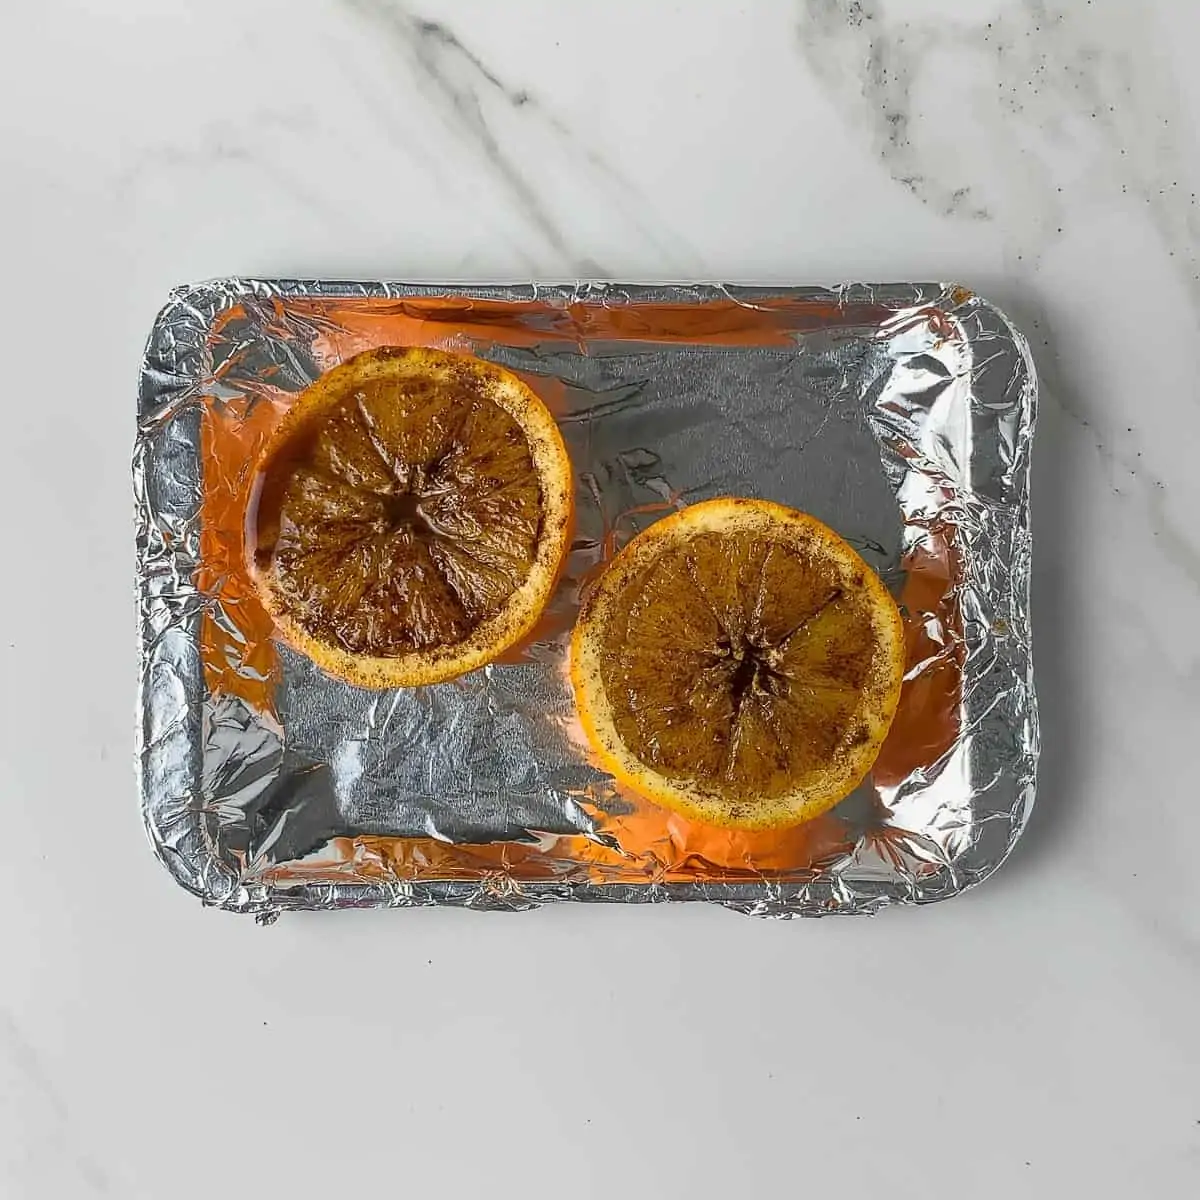 uncooked orange halves on baking sheet